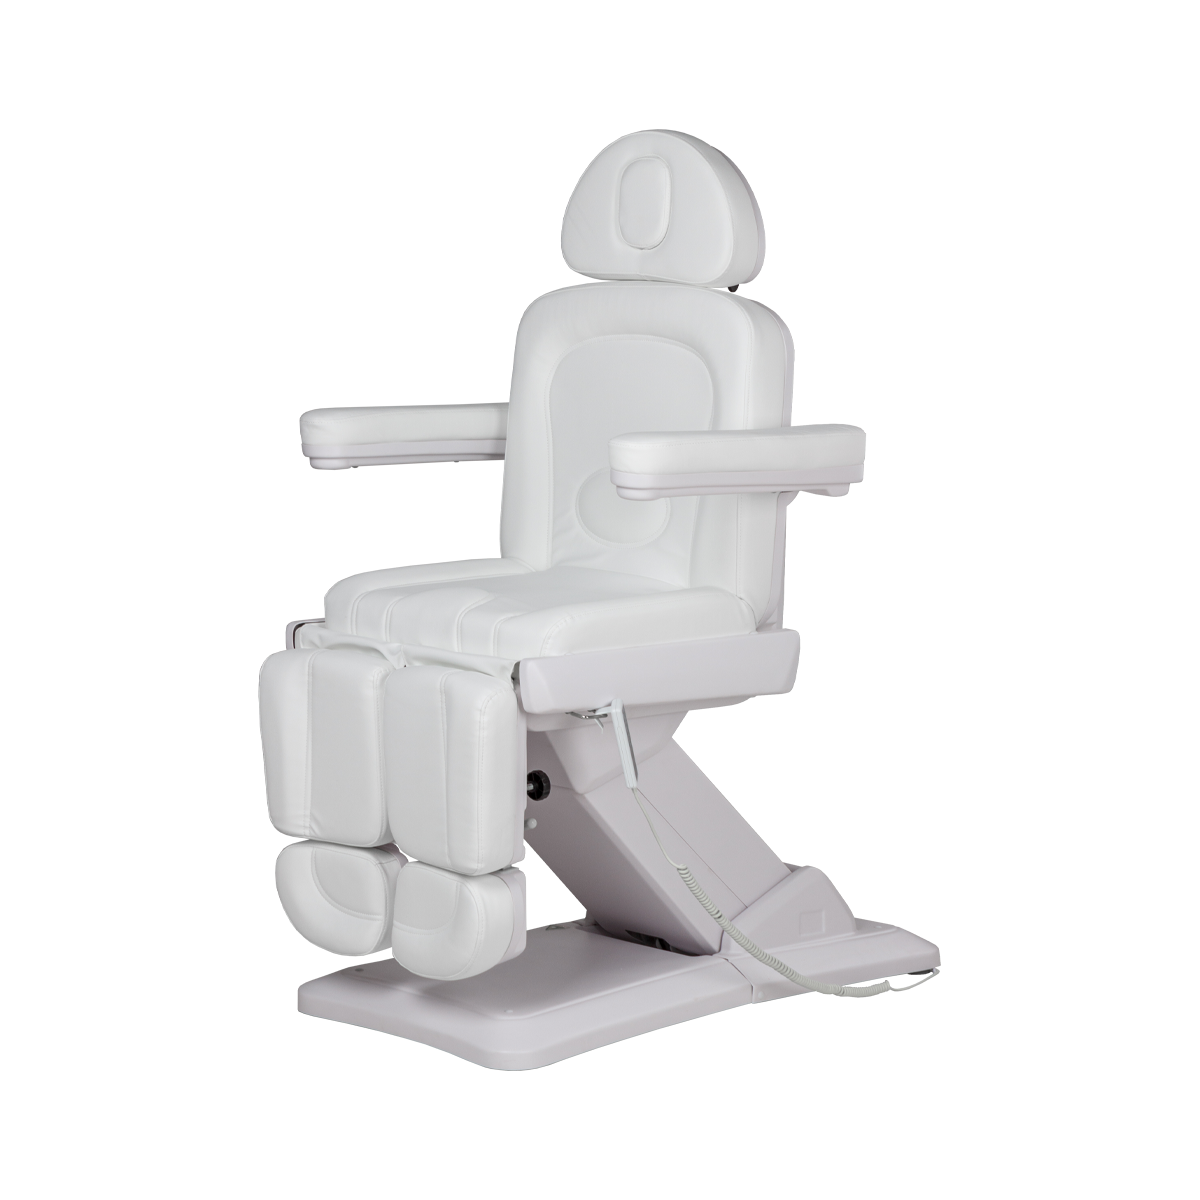 Педикюрное кресло МД-848-3А, 3 мотора - 1 